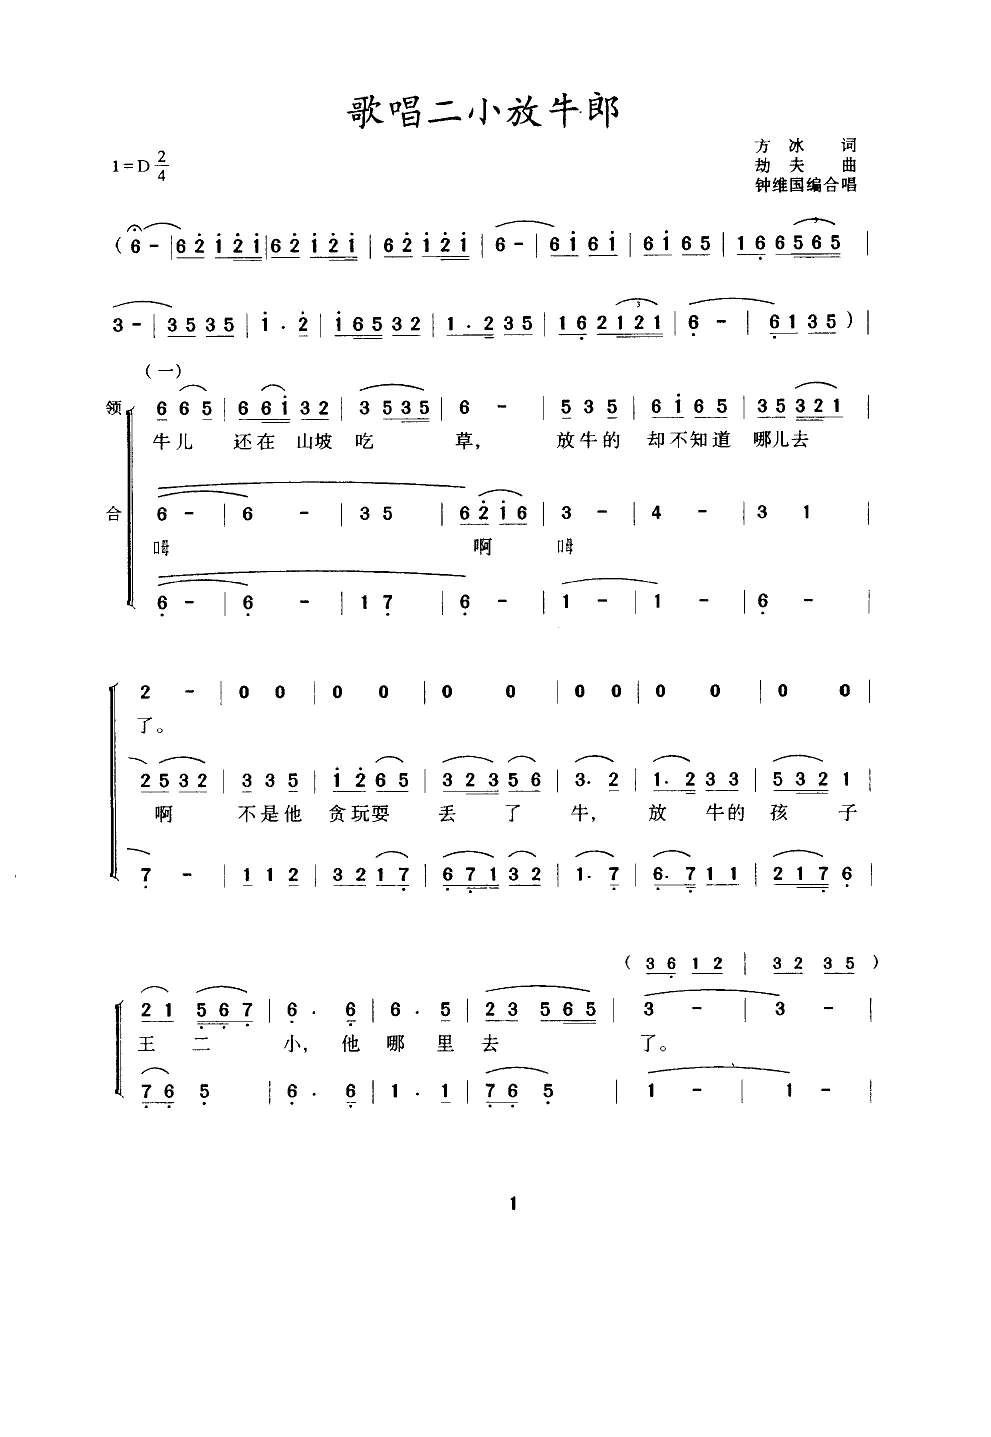 歌唱二小放牛郎(合唱、钟维国改编)合唱曲谱（图1）